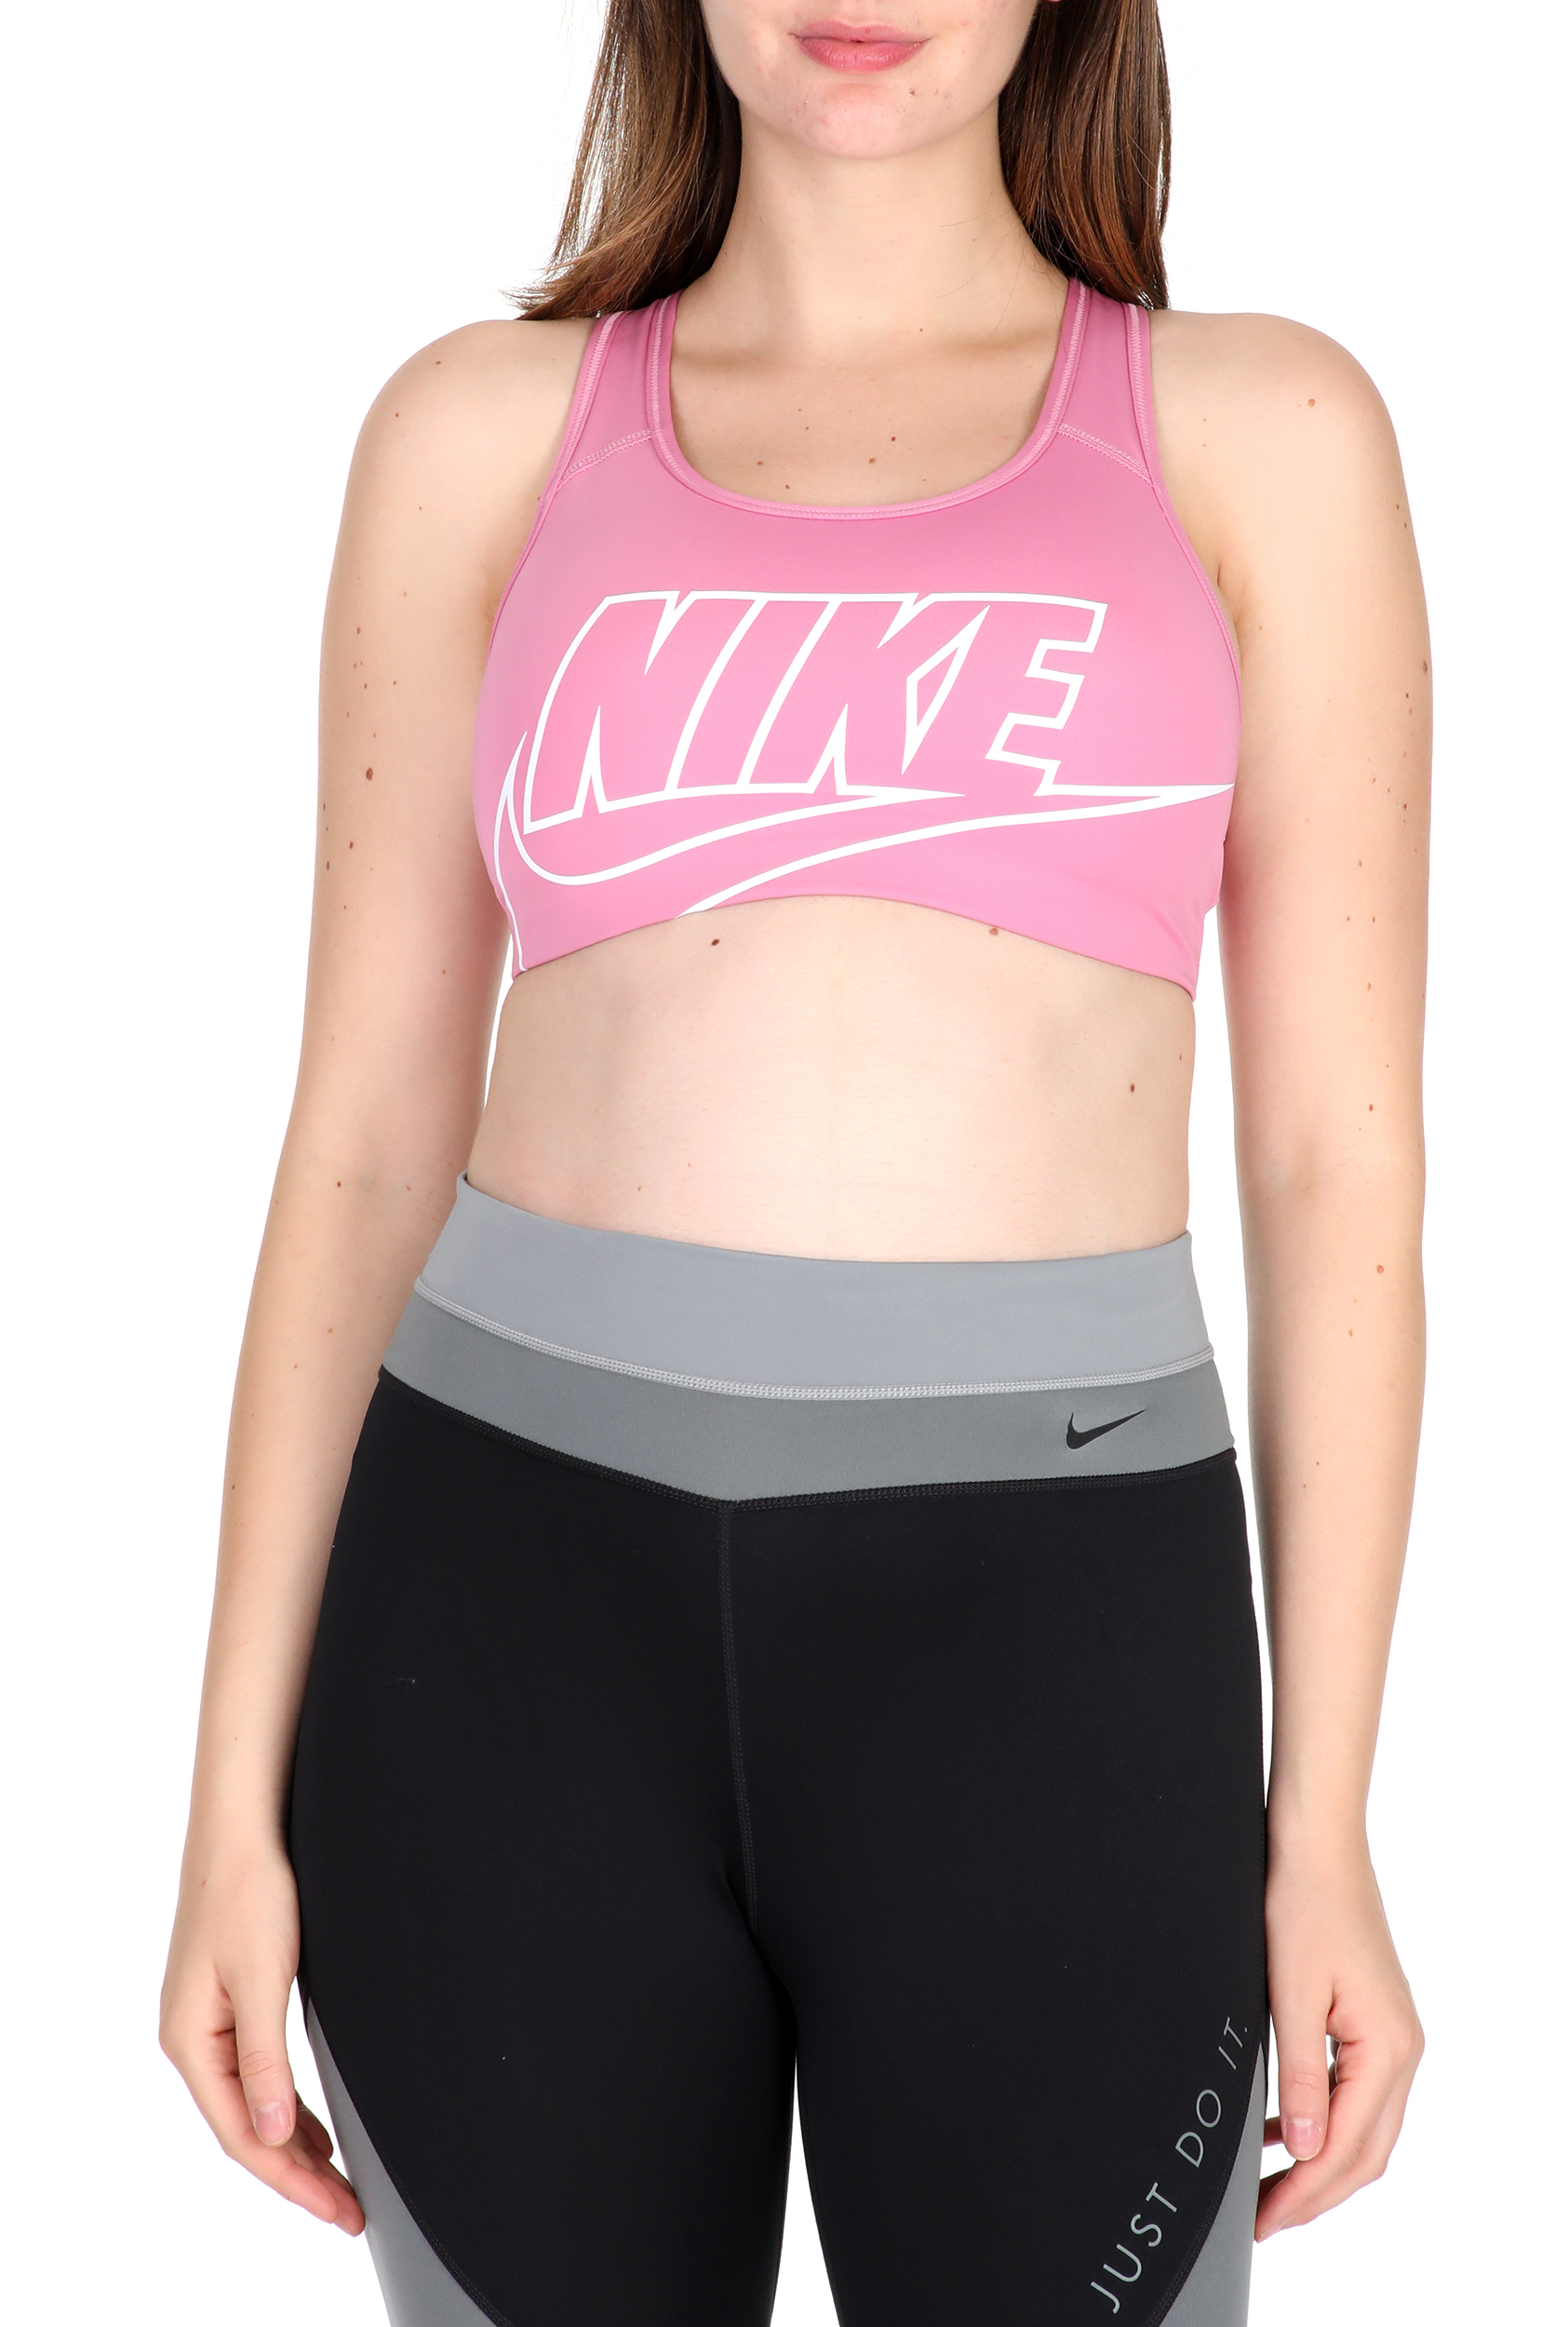 NIKE - Γυναικείο αθλητικό μπουστάκι NIKE SWOOSH FUTURA BRA ροζ Γυναικεία/Ρούχα/Αθλητικά/Μπουστάκια